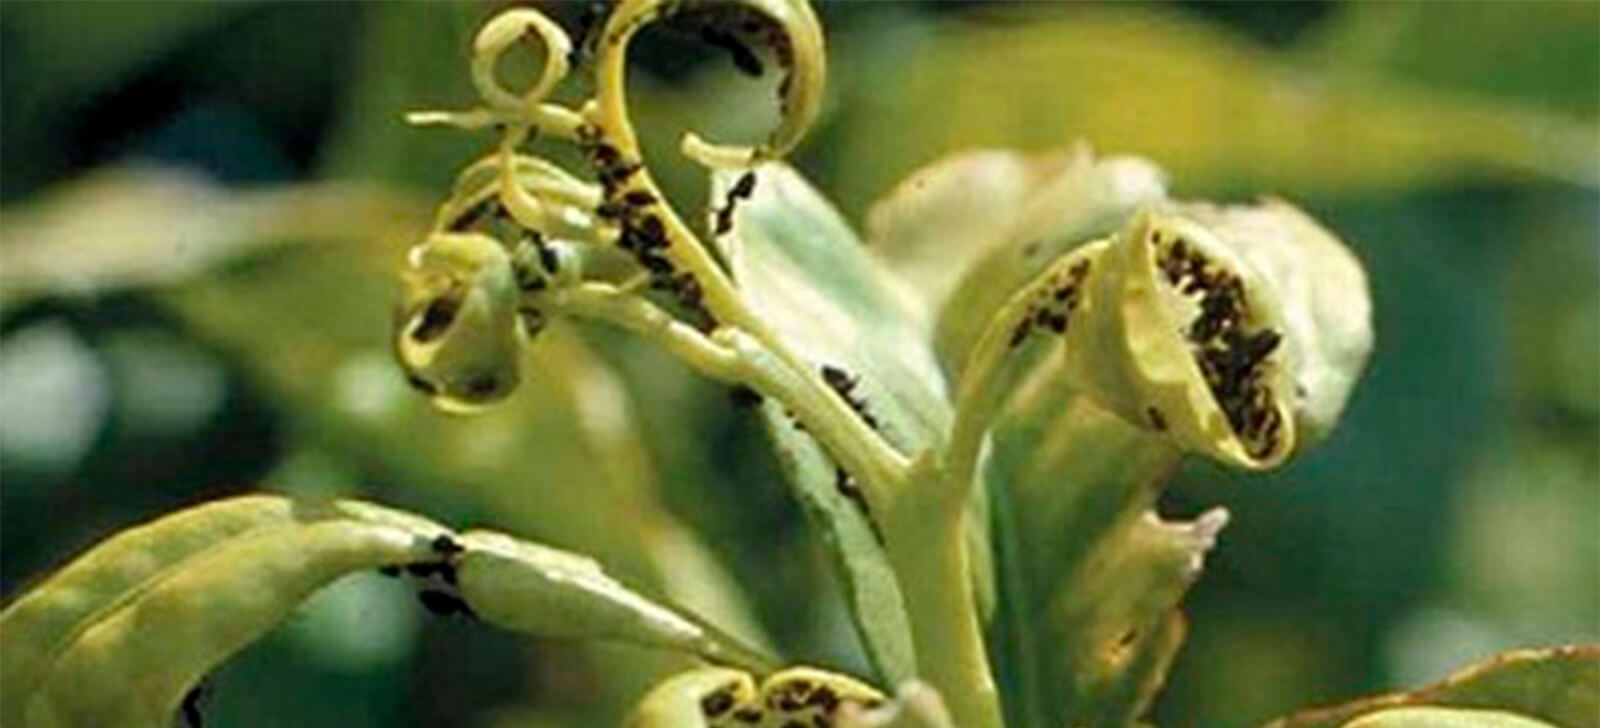 promip manejo integrado de pragas controle biologico joaninhas na horta protecao eficaz contra pulgoes (11)